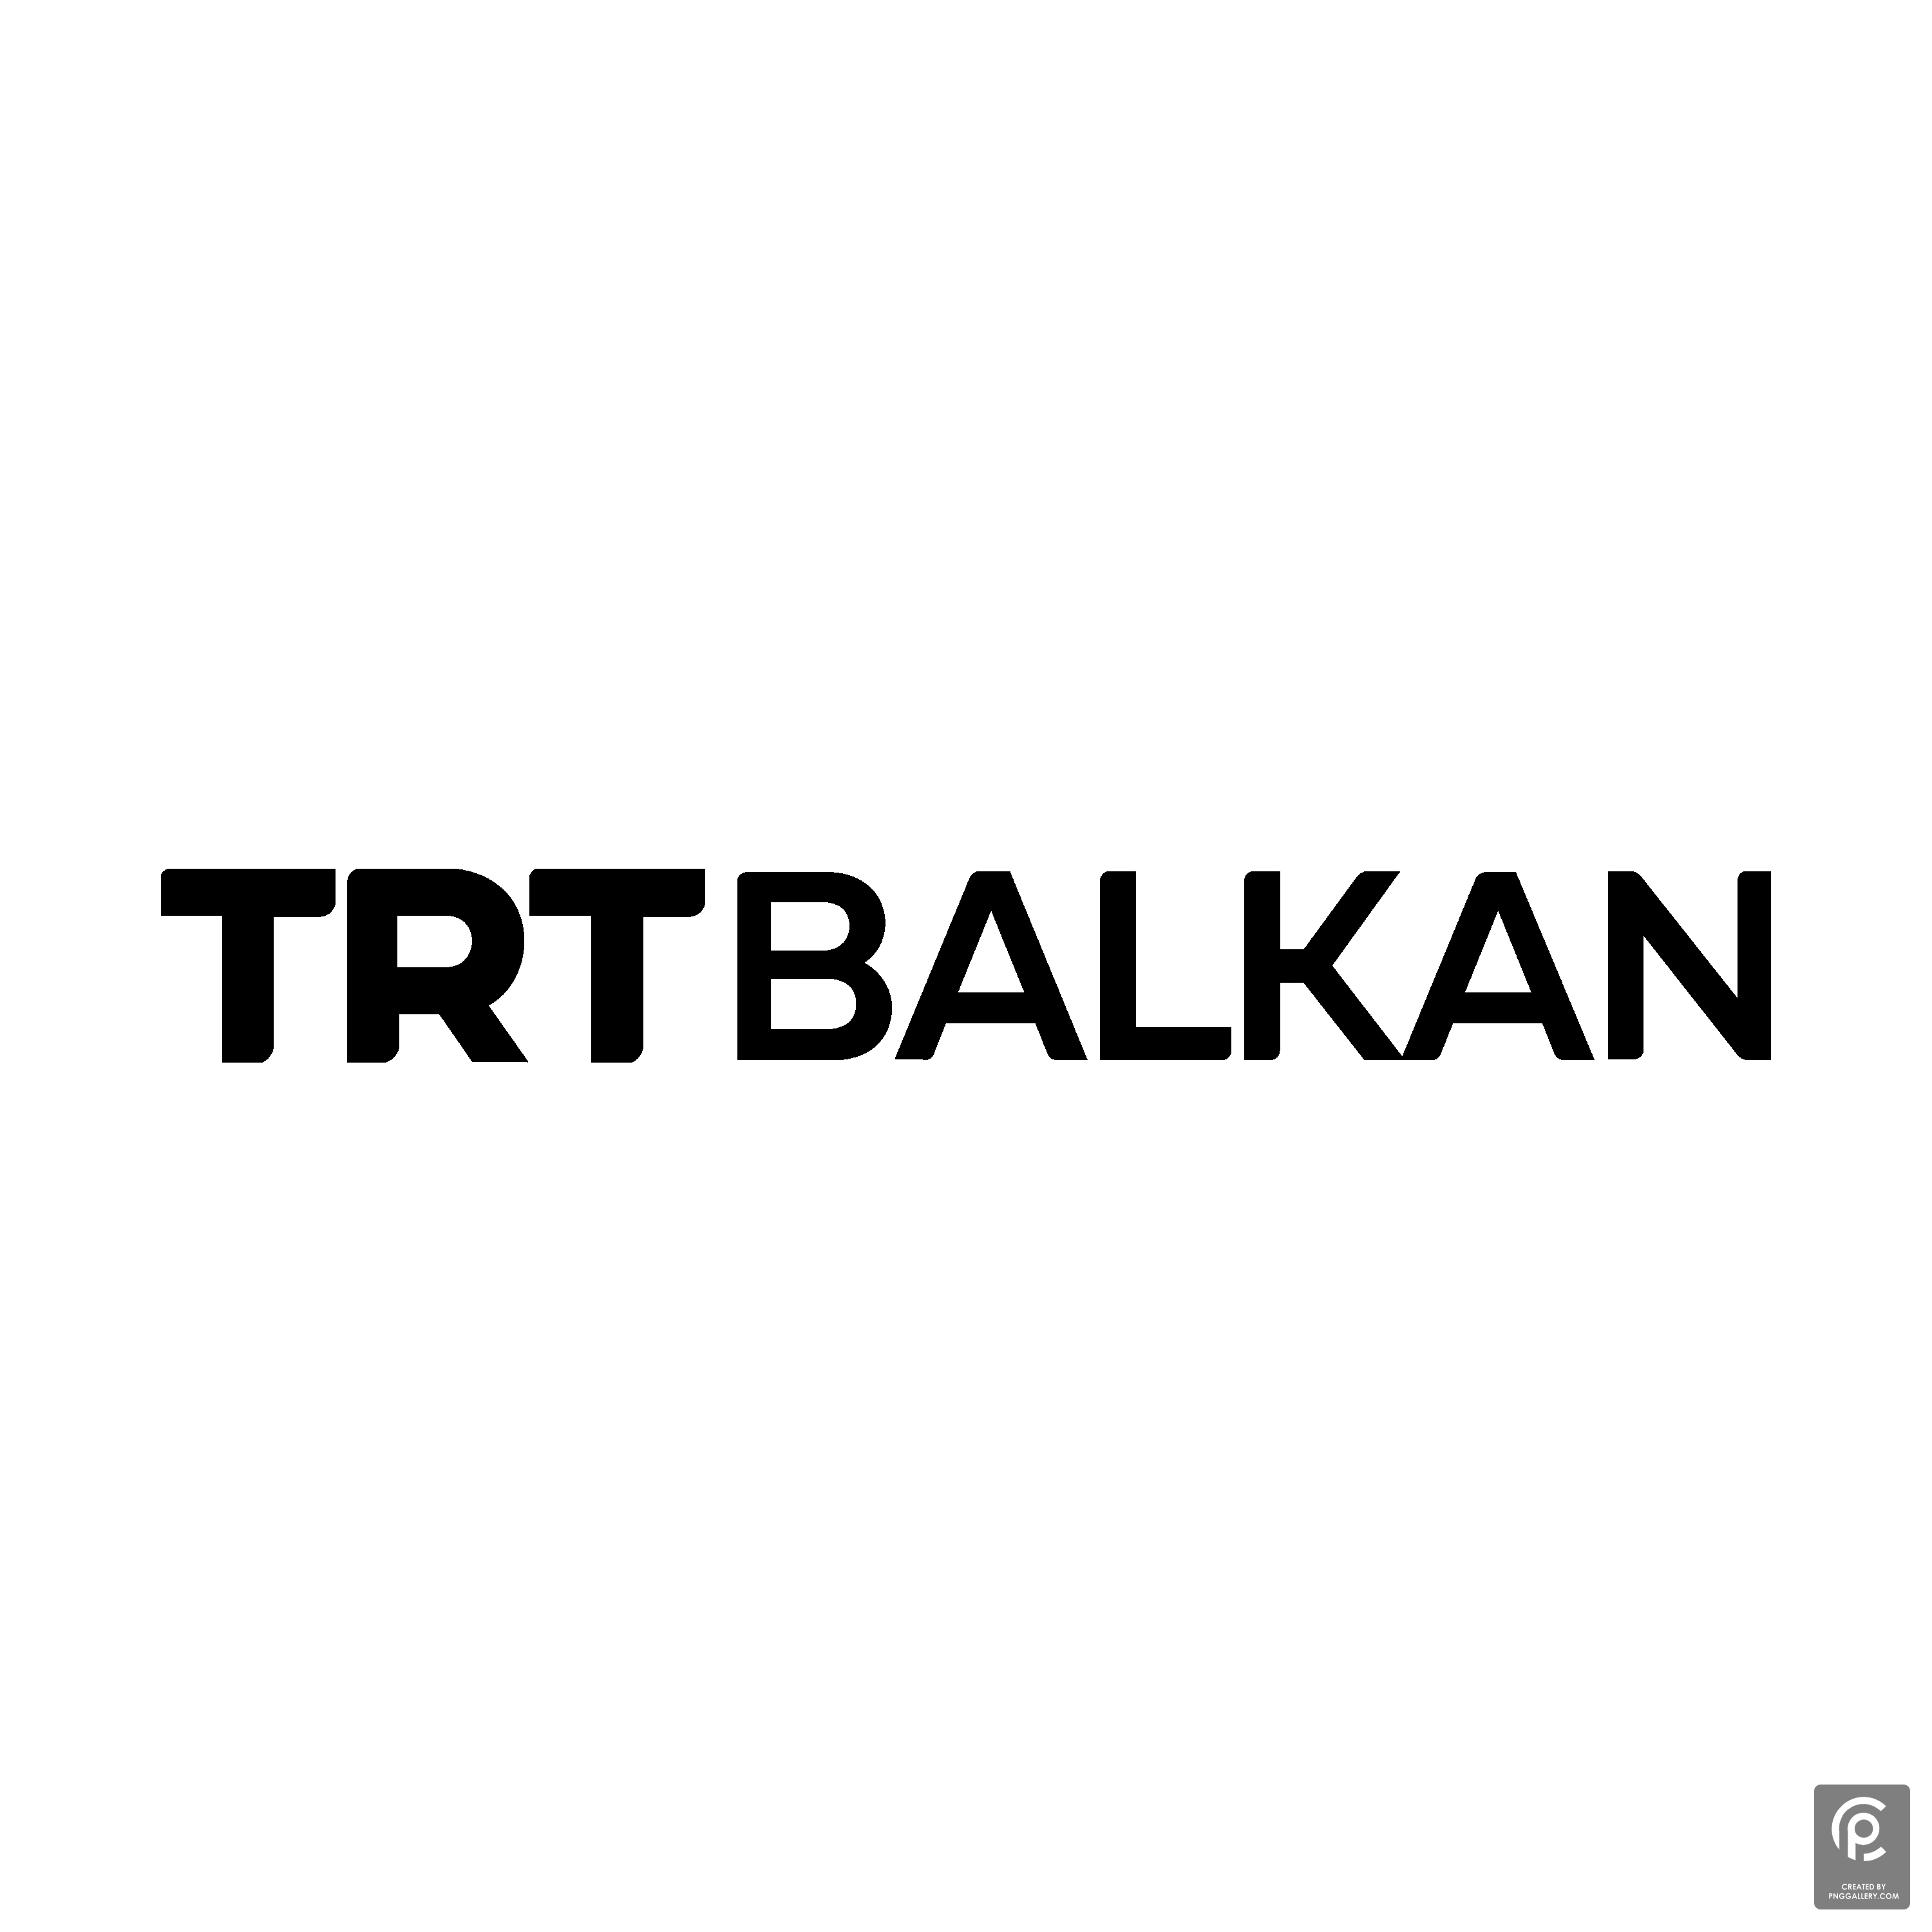 TRT Balkan Logo Transparent Gallery